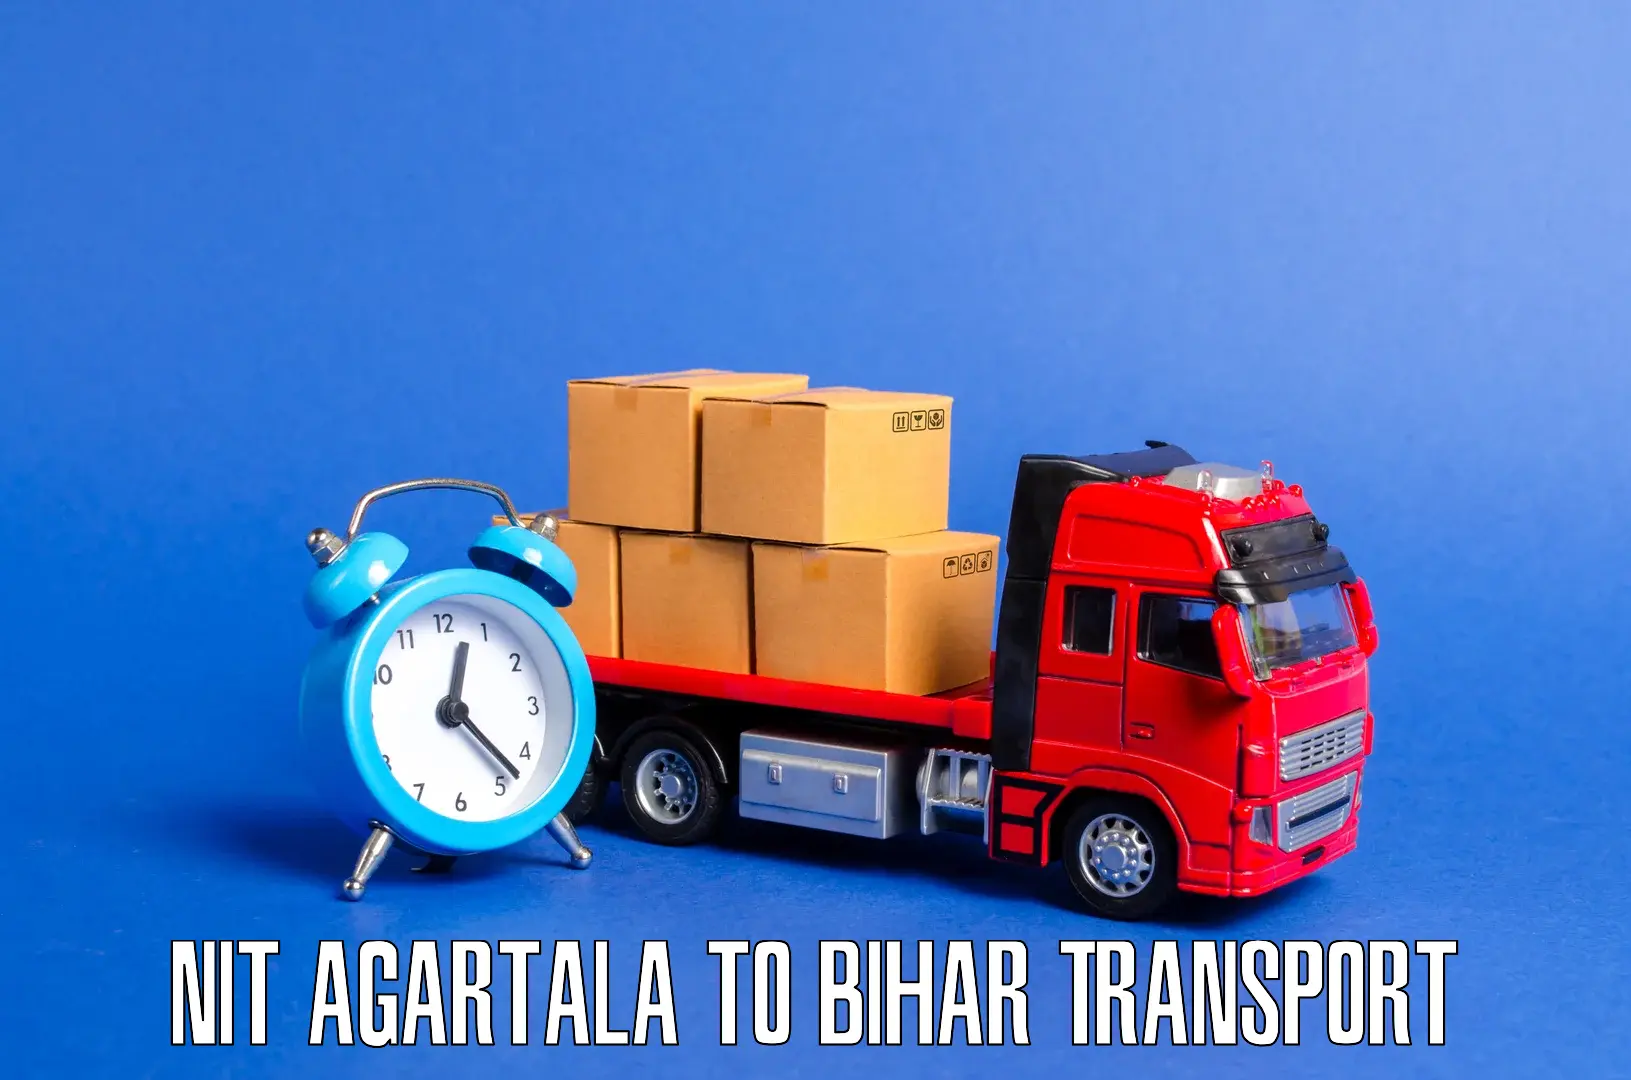 Bike shipping service NIT Agartala to Bihar